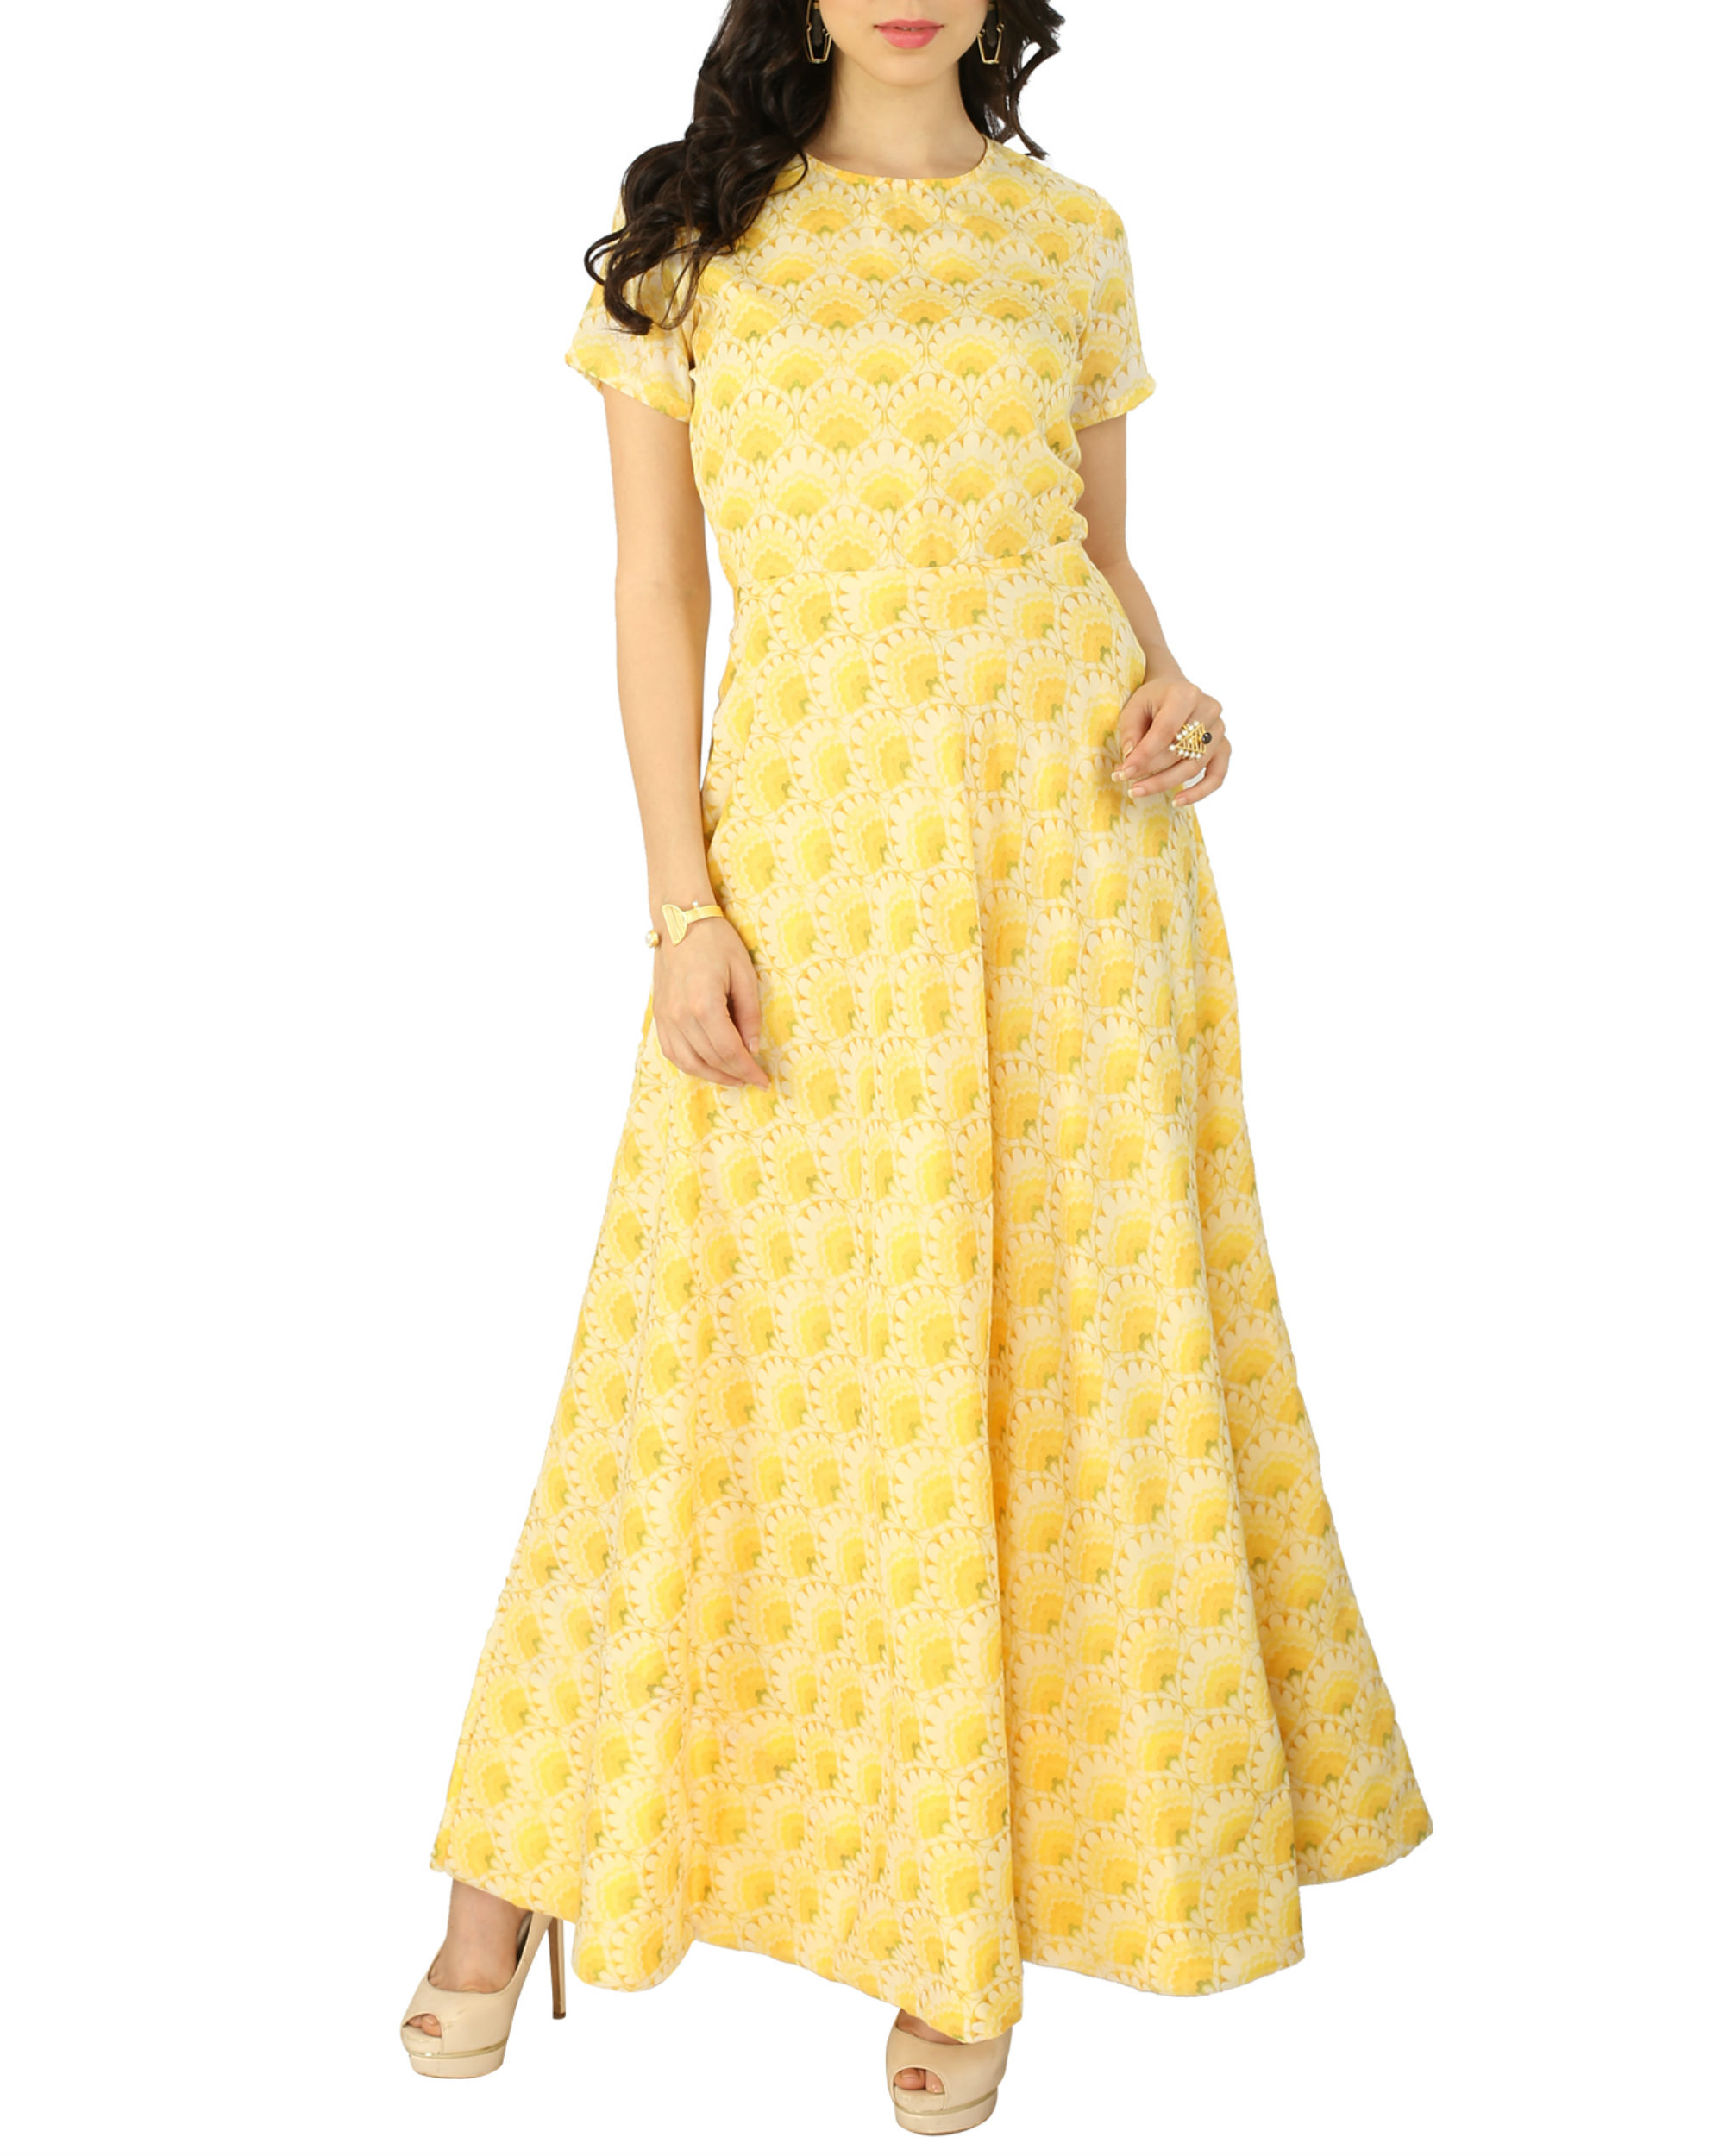 Yellow sunflower gown by Tie & Dye Tale | The Secret Label